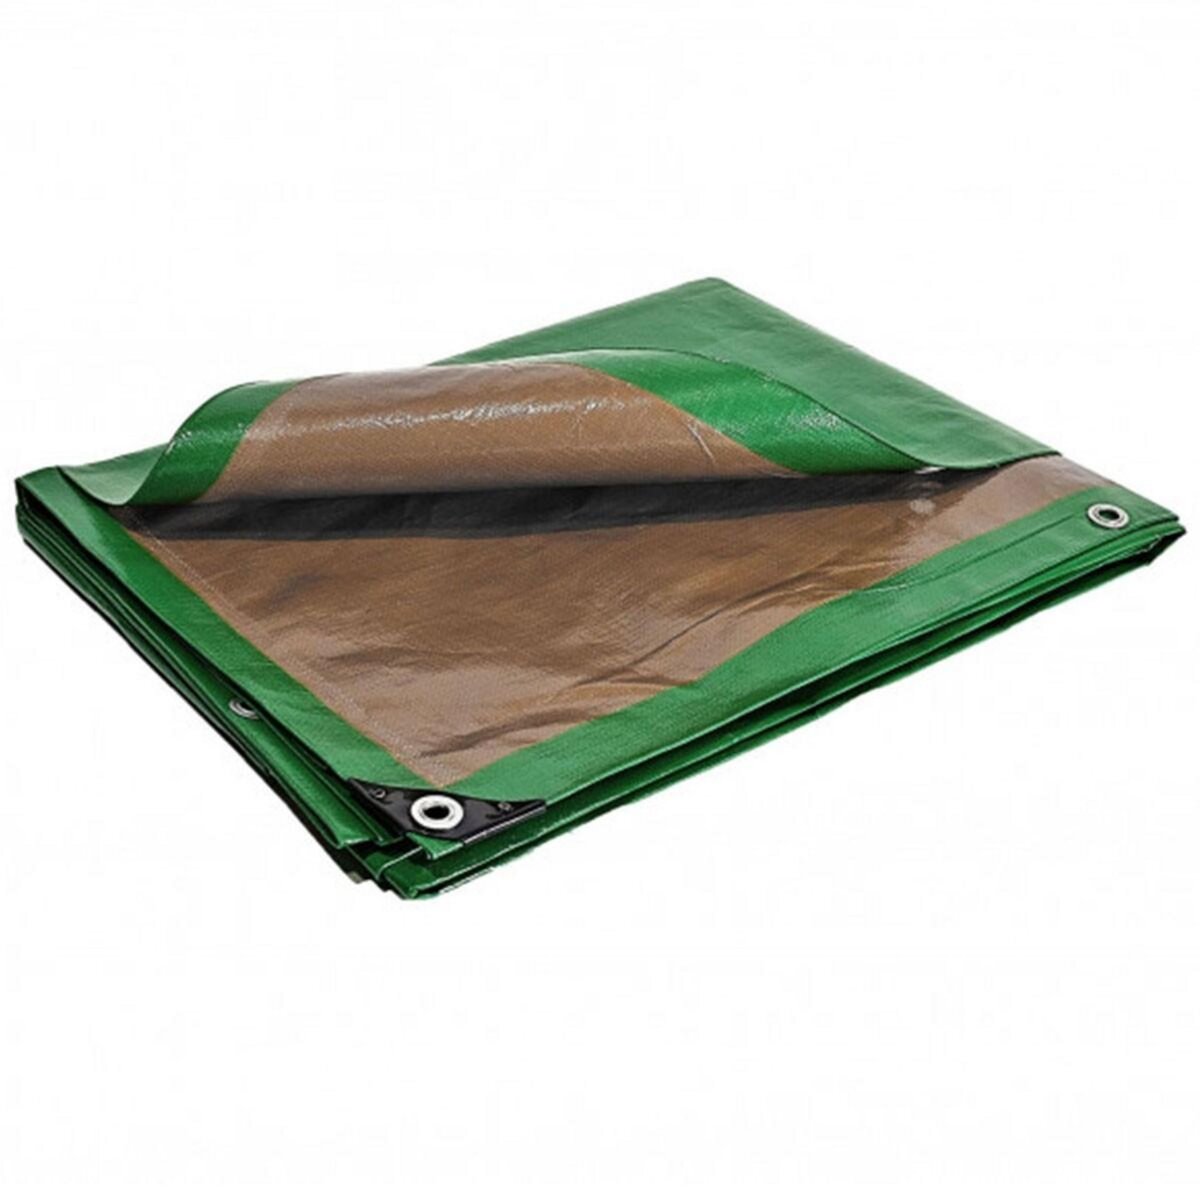 Tecplast Bâche plastique 4x5 m étanche traitée anti UV verte et marron 250g/m2 - bâche de protection polyéthylène haute qualité